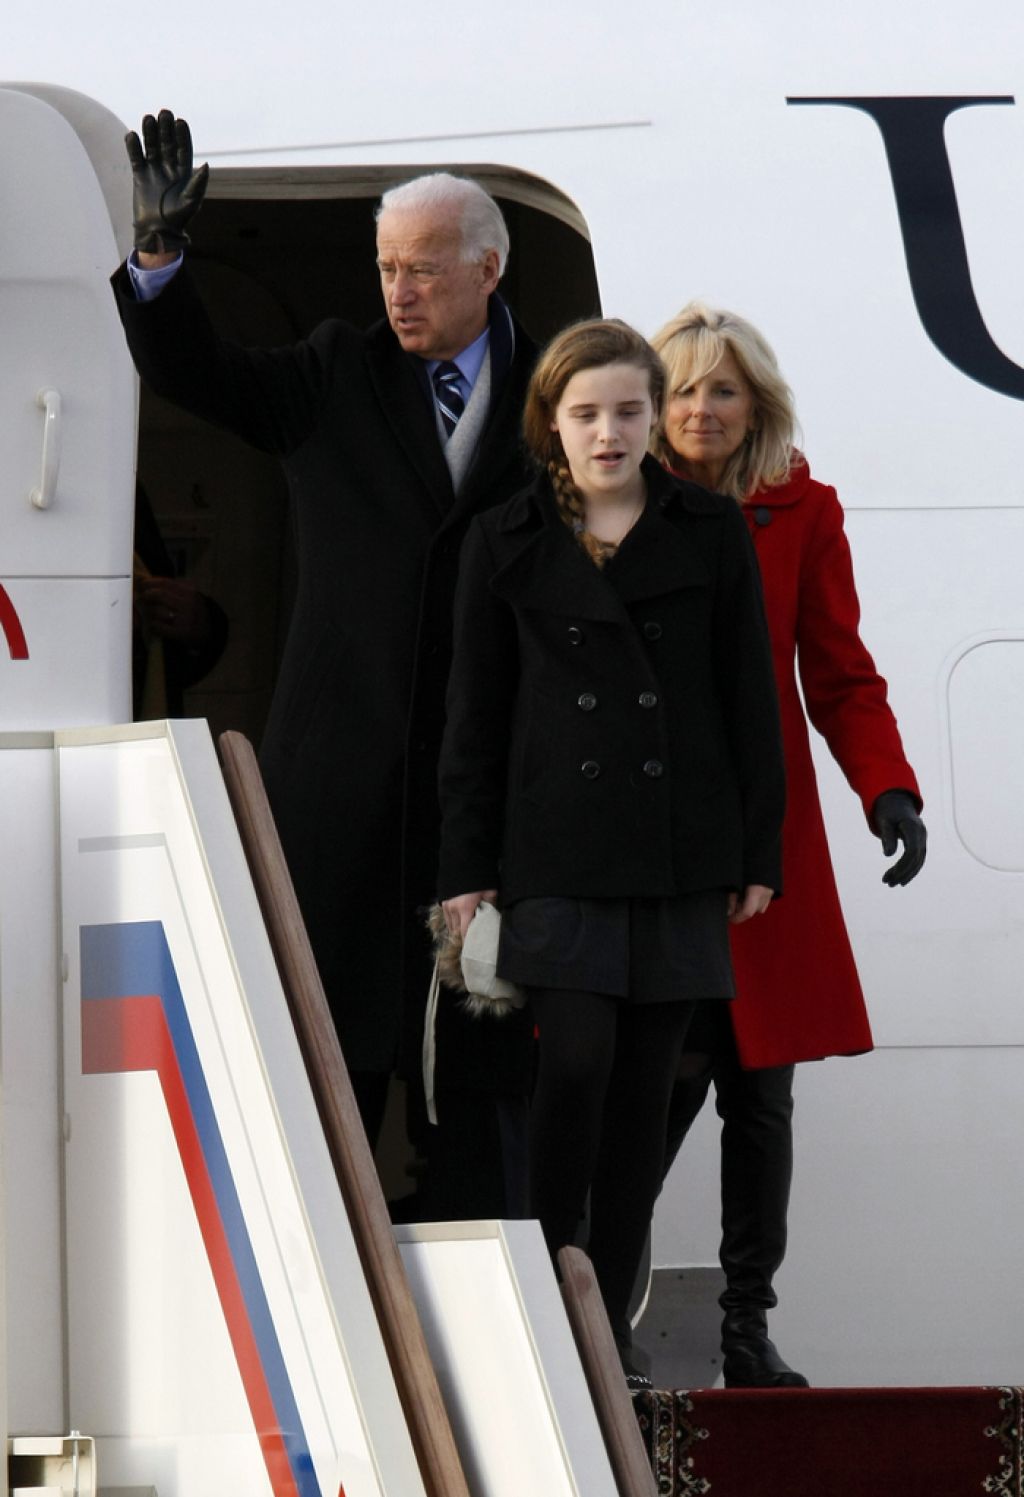 Joe Biden v Rusiji: dialog, prežet z nezaupanjem